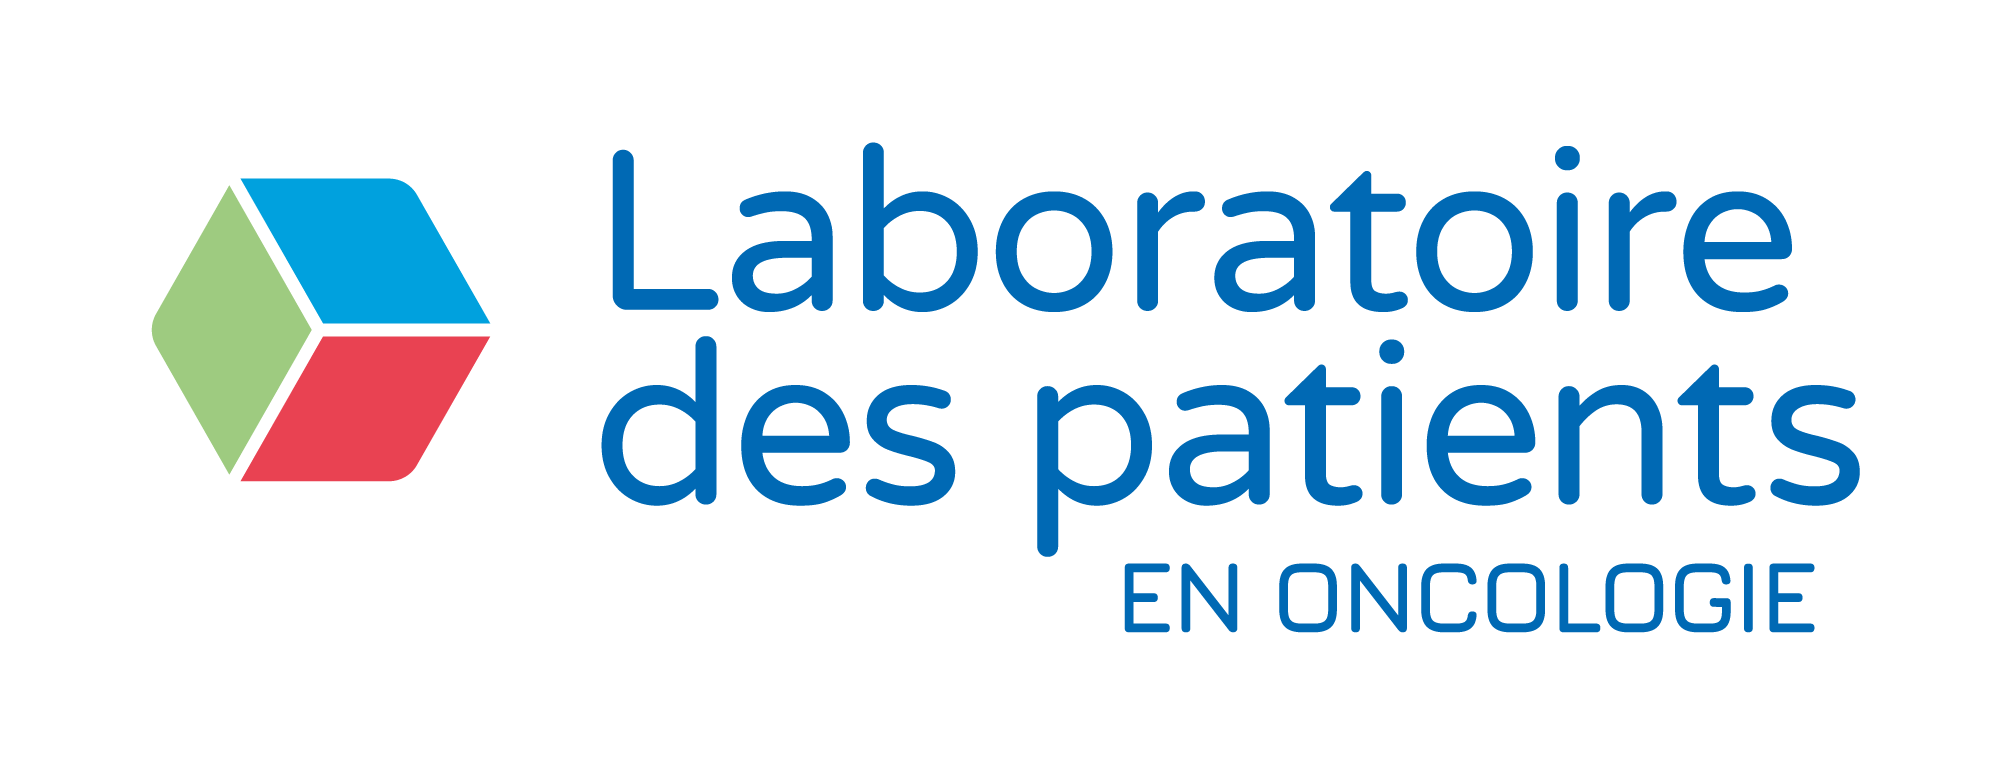 LaboratoireDesPatients_Logo_Baseline_Couleur.png